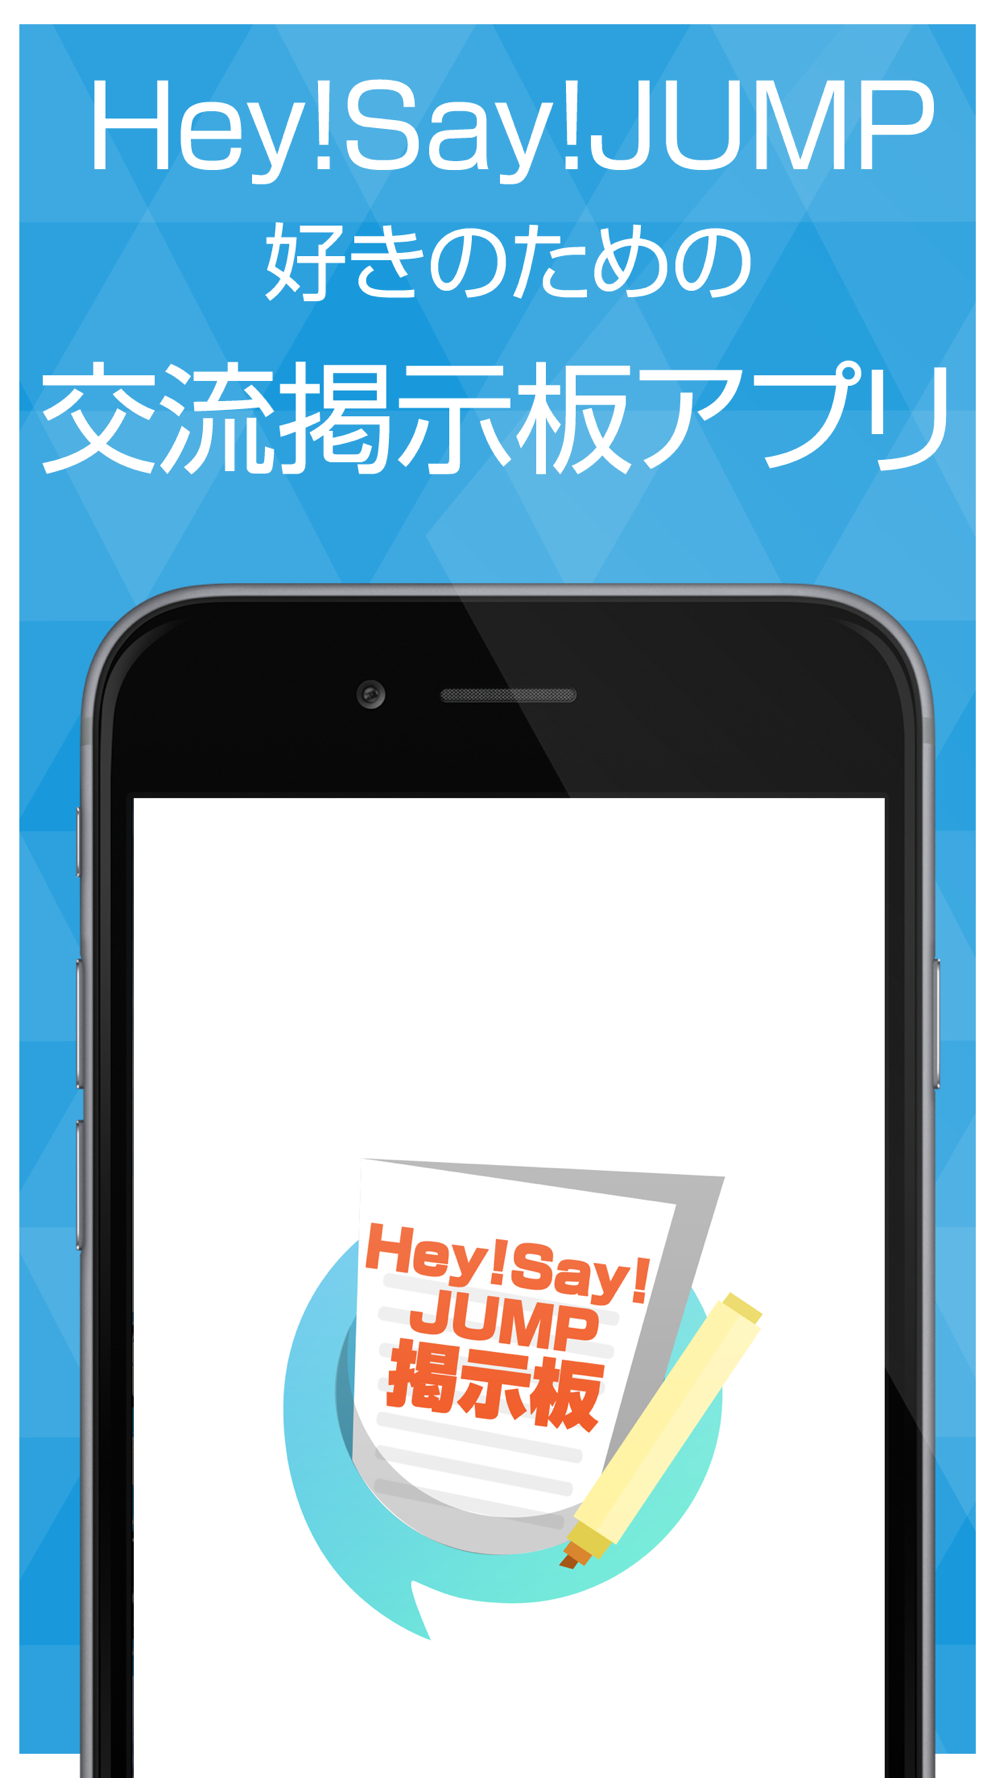 ファン交流掲示板 For Hey Say Jump 平成ジャンプ Free Download App For Iphone Steprimo Com